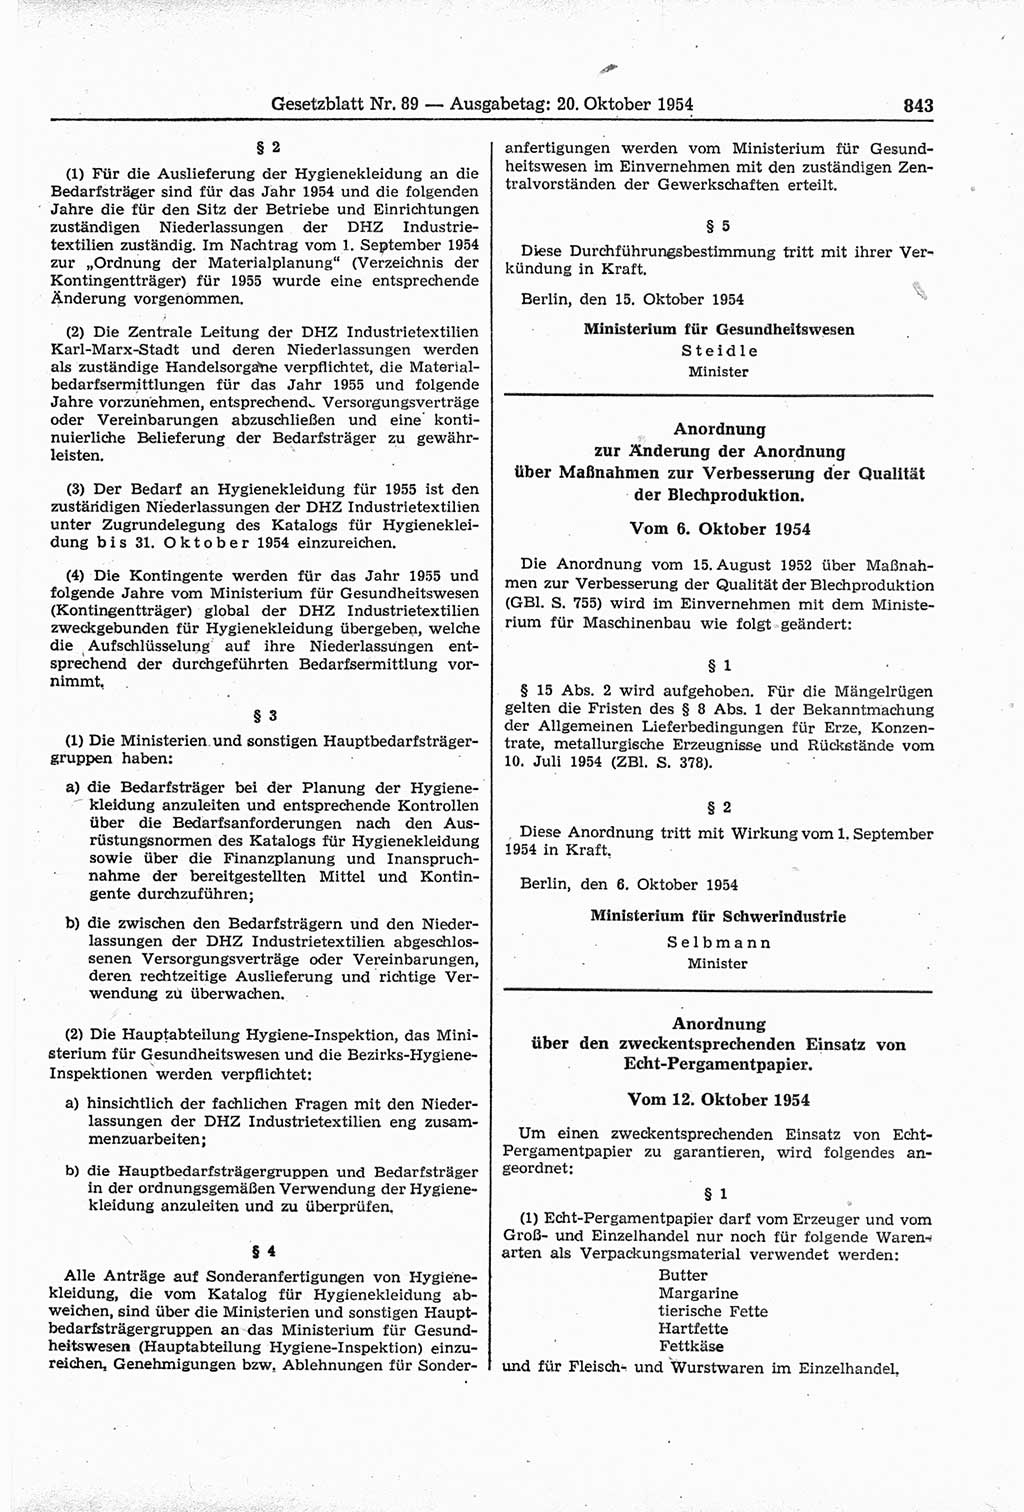 Gesetzblatt (GBl.) der Deutschen Demokratischen Republik (DDR) 1954, Seite 843 (GBl. DDR 1954, S. 843)